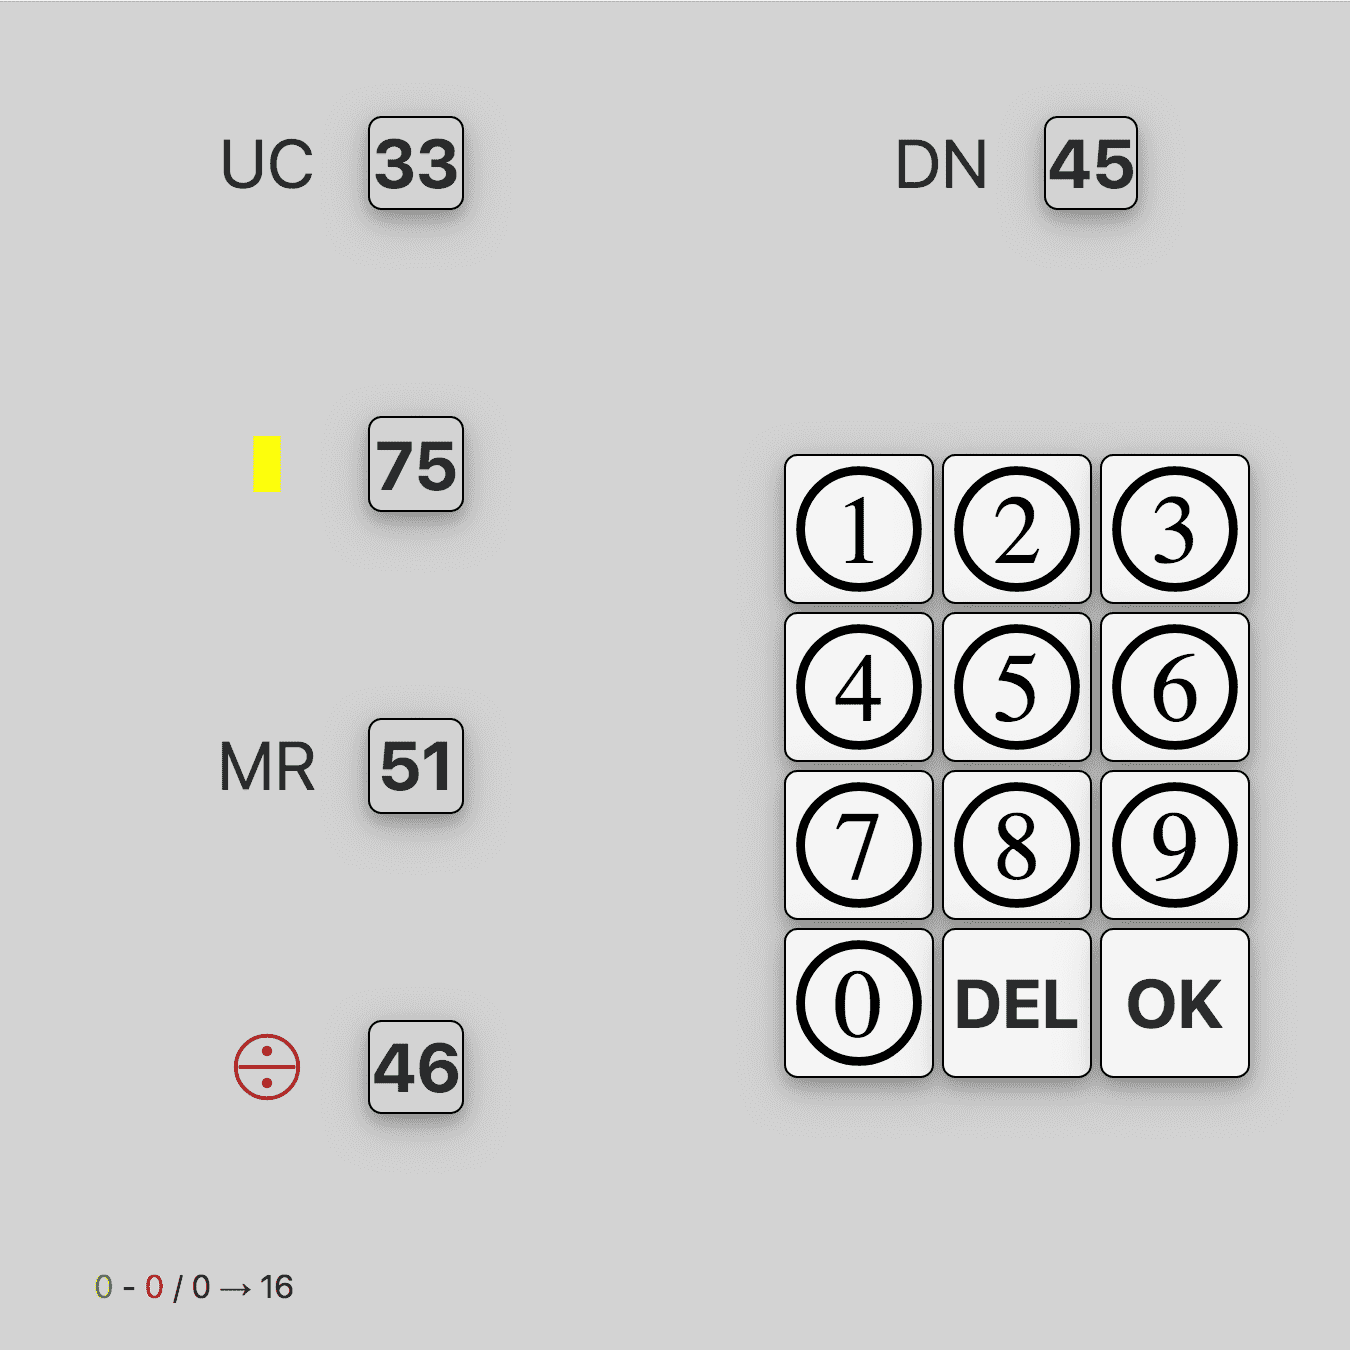 DLR - MEK - Visual memory